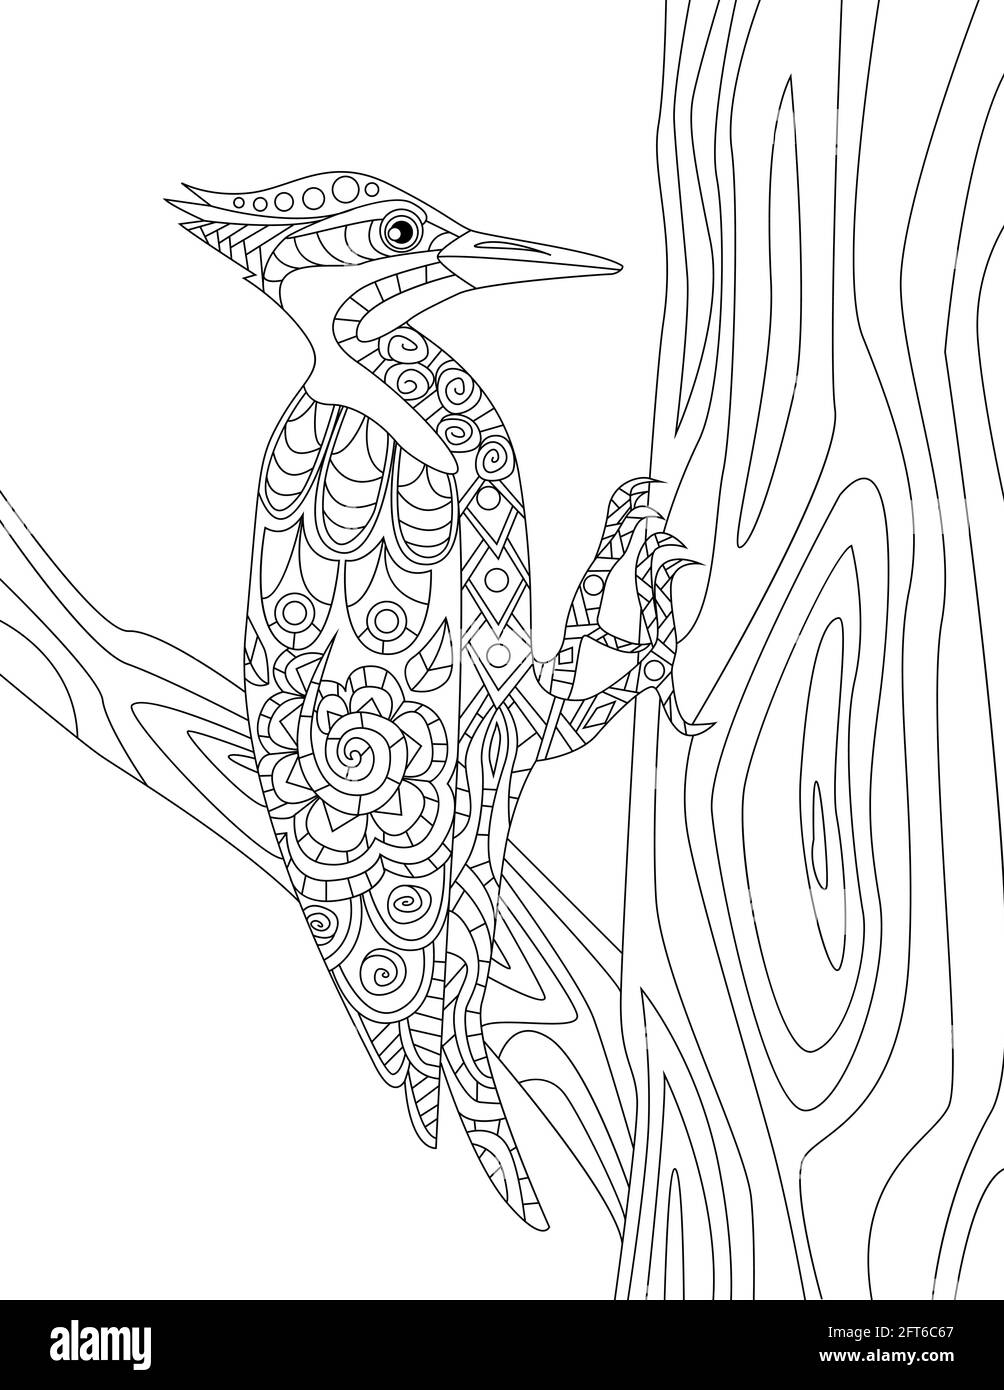 Tropische Vögel Doodles Auf Bäumen, Handzeichnung Pelikan, Linienbild Flamingo, Baum-Vektor-Illustration, Wild Life Line Design, Outline Forest Design Stock Vektor